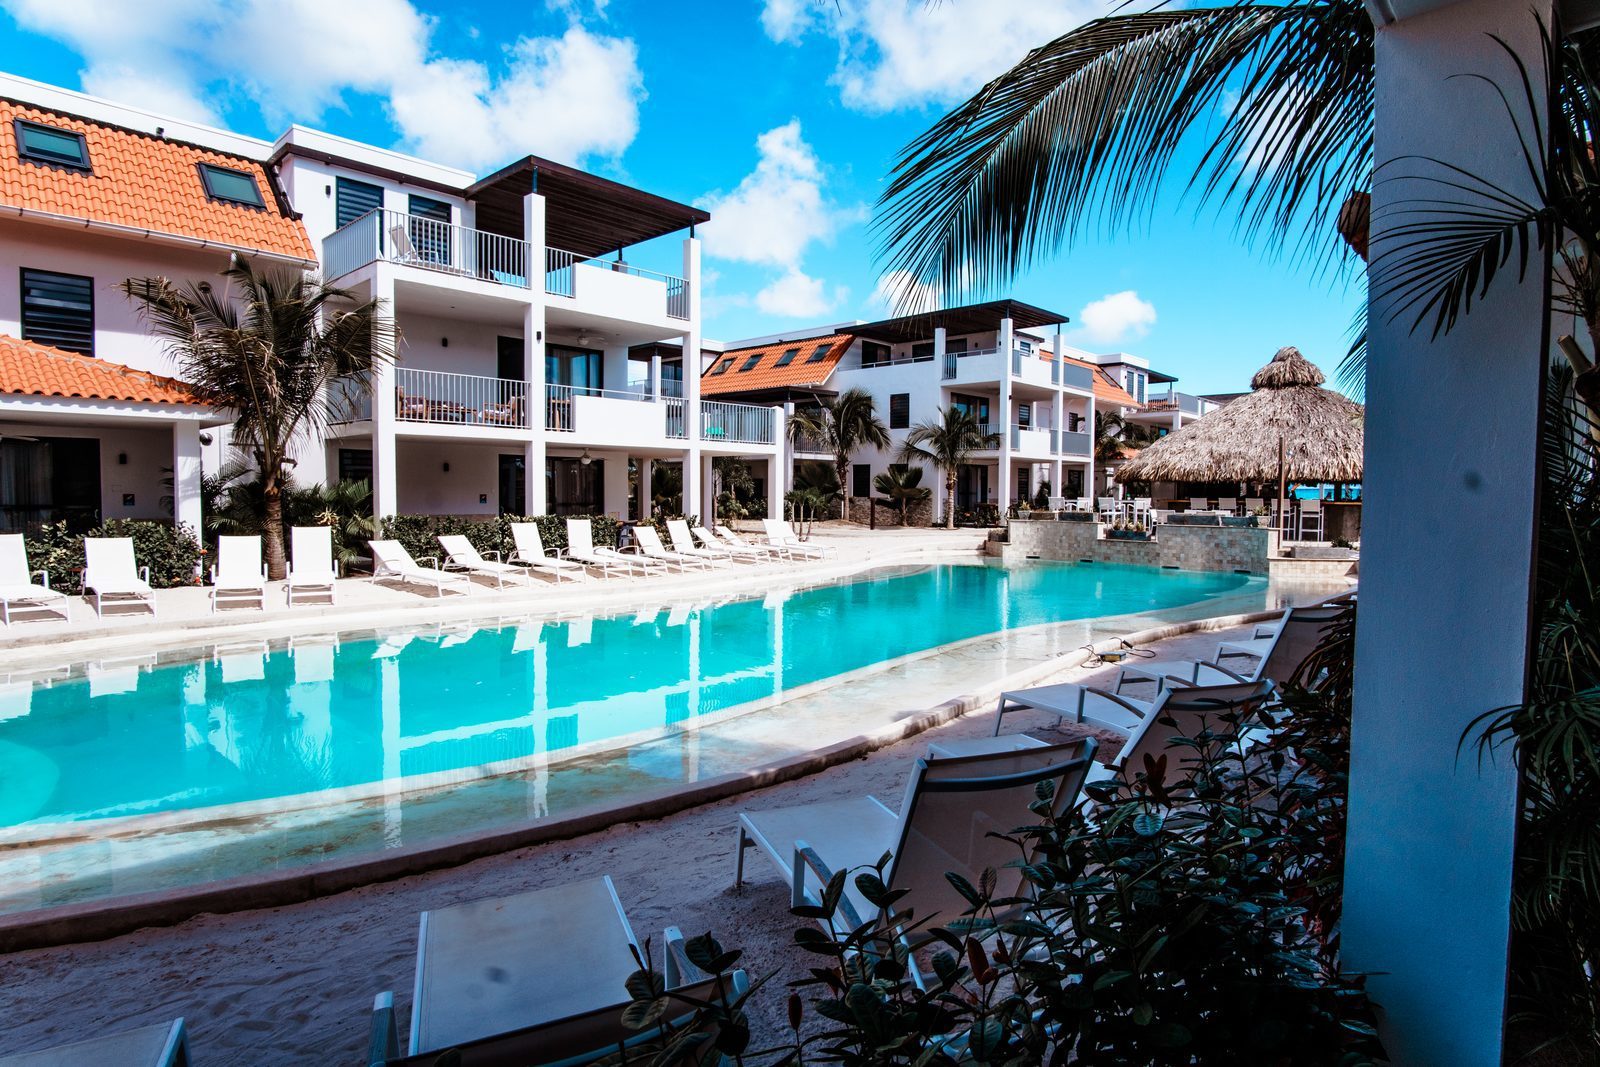 Resort Bonaire es uno de los bellos complejos de Bonaire. El complejo ofrece, entre otras cosas, una bonita piscina.